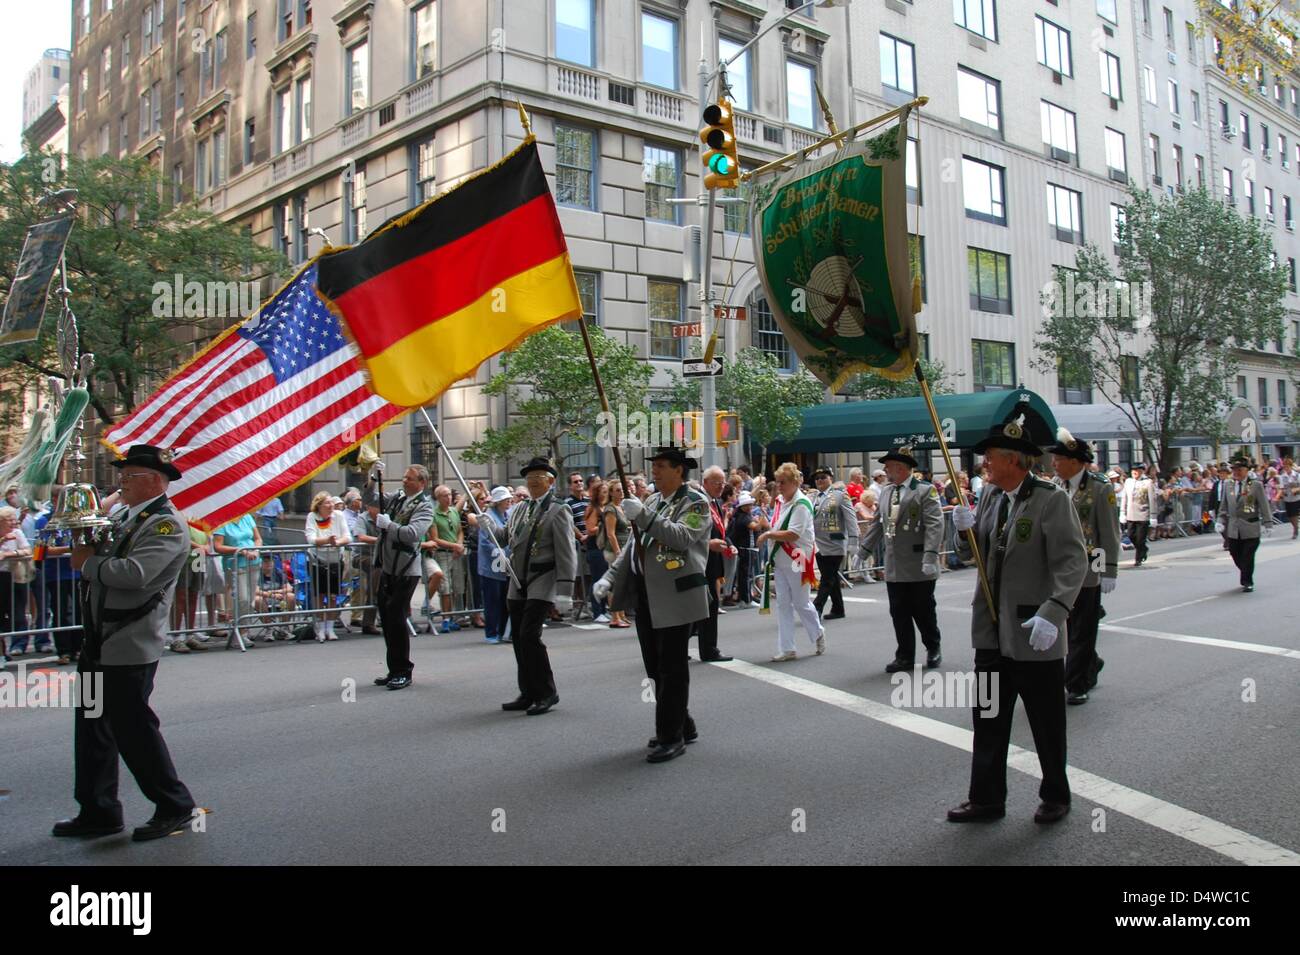 Teilnehmer der Steuben-Parade mit deutschen und US-Flaggen marschieren in Tracht, am Samstag (25.09.2010) in New York. Die Steuben-Parade in New York hat wieder zehntausende Zuschauer begeistert. Mit der jährlichen Parade soll die Kultur der deutschen Einwanderer bewahrt werden. (Zu dpa-KORR '«Deutschland ist cool!»: New York feiert Steuben-Parade' vom 26.09.2010) Foto: Chris Melze Stock Photo